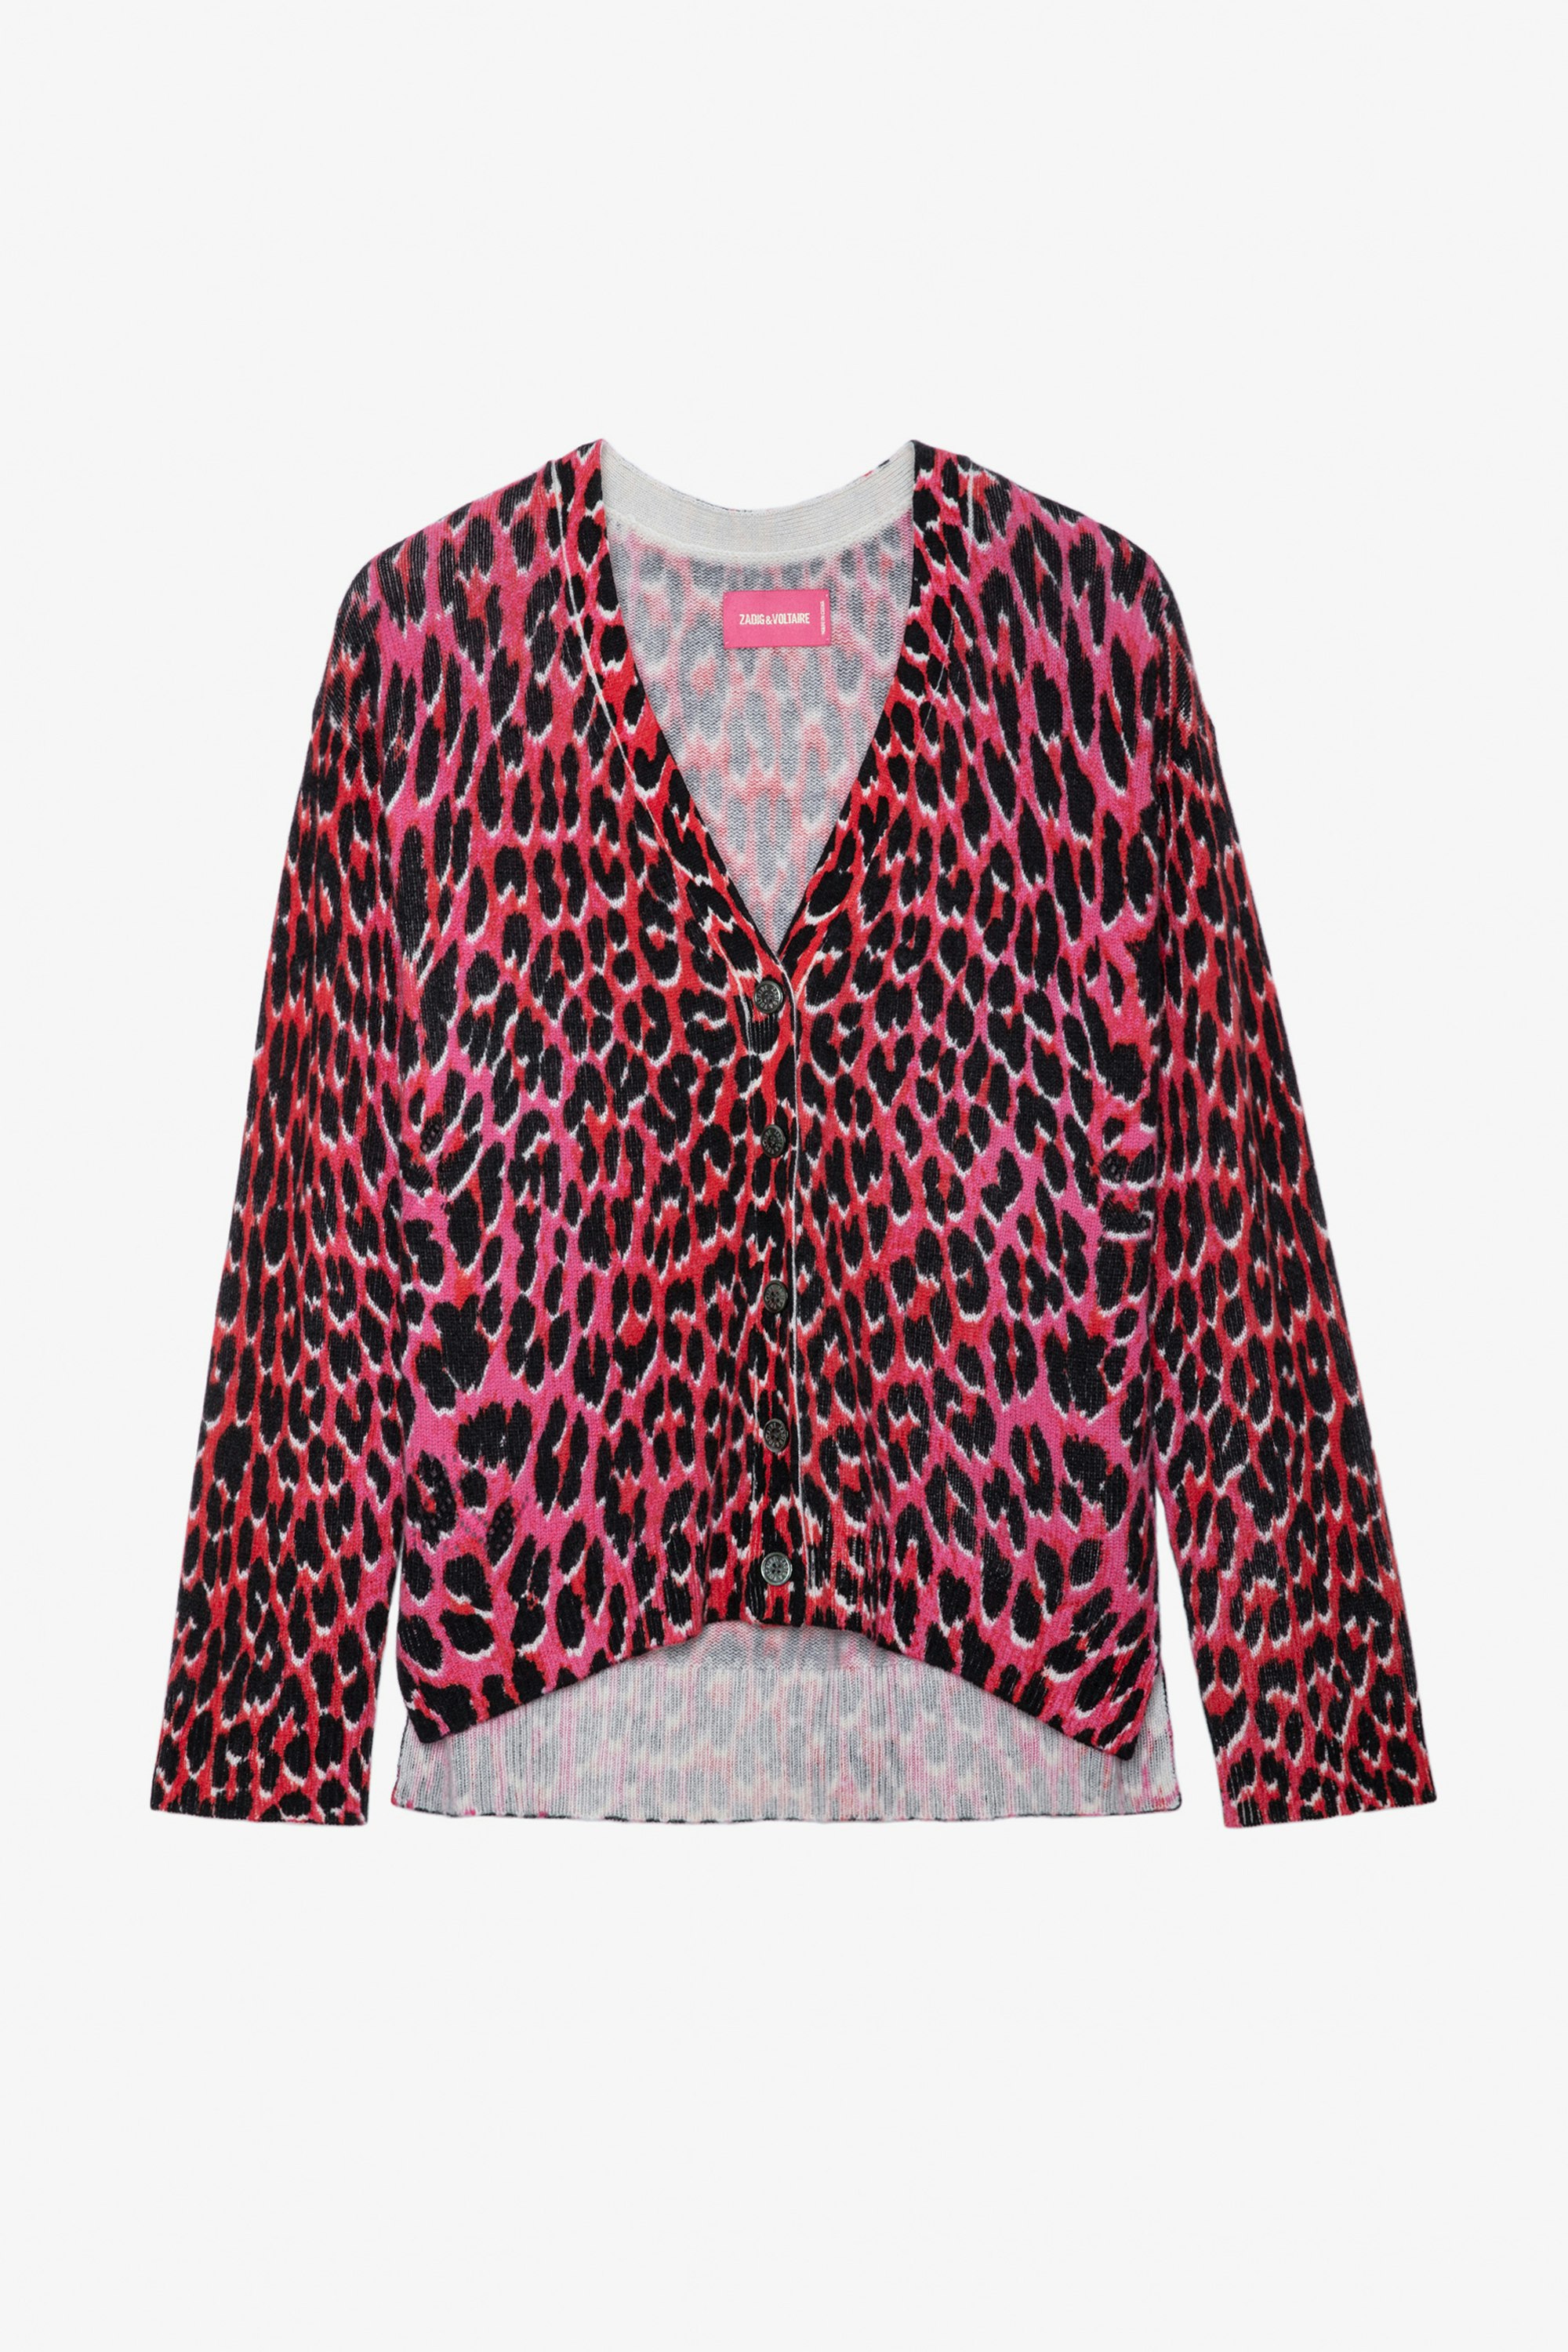 Chaleco de cachemira con efecto leopardo Mirka - Chaleco rosa de cachemira con estampado de leopardo para mujer.